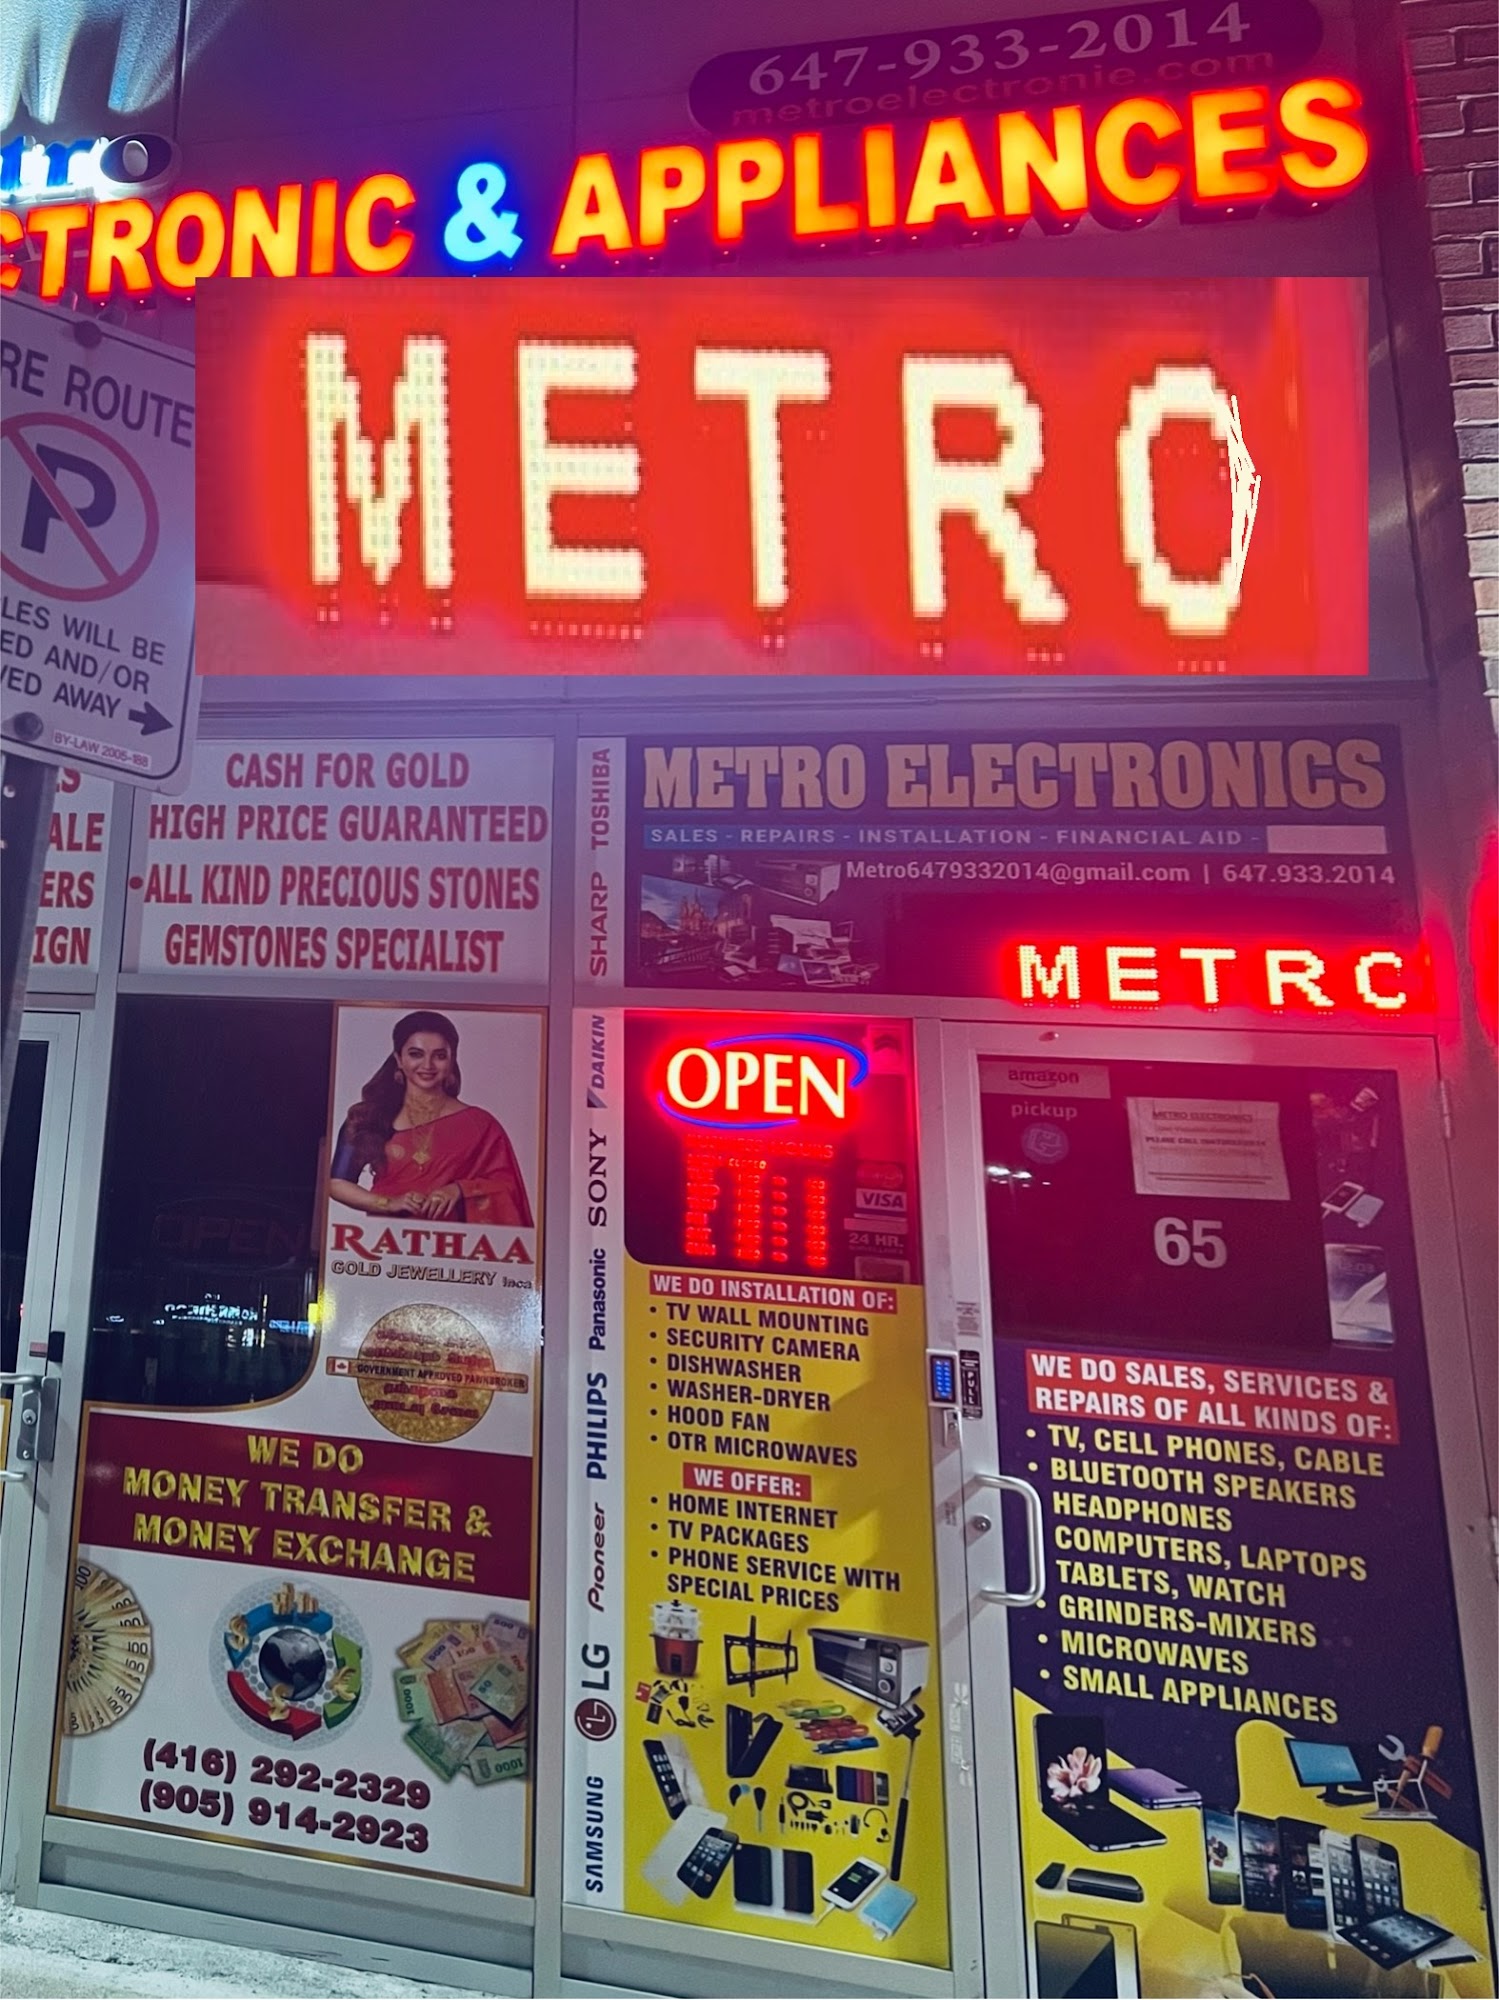 Metro Electronic & Appliances